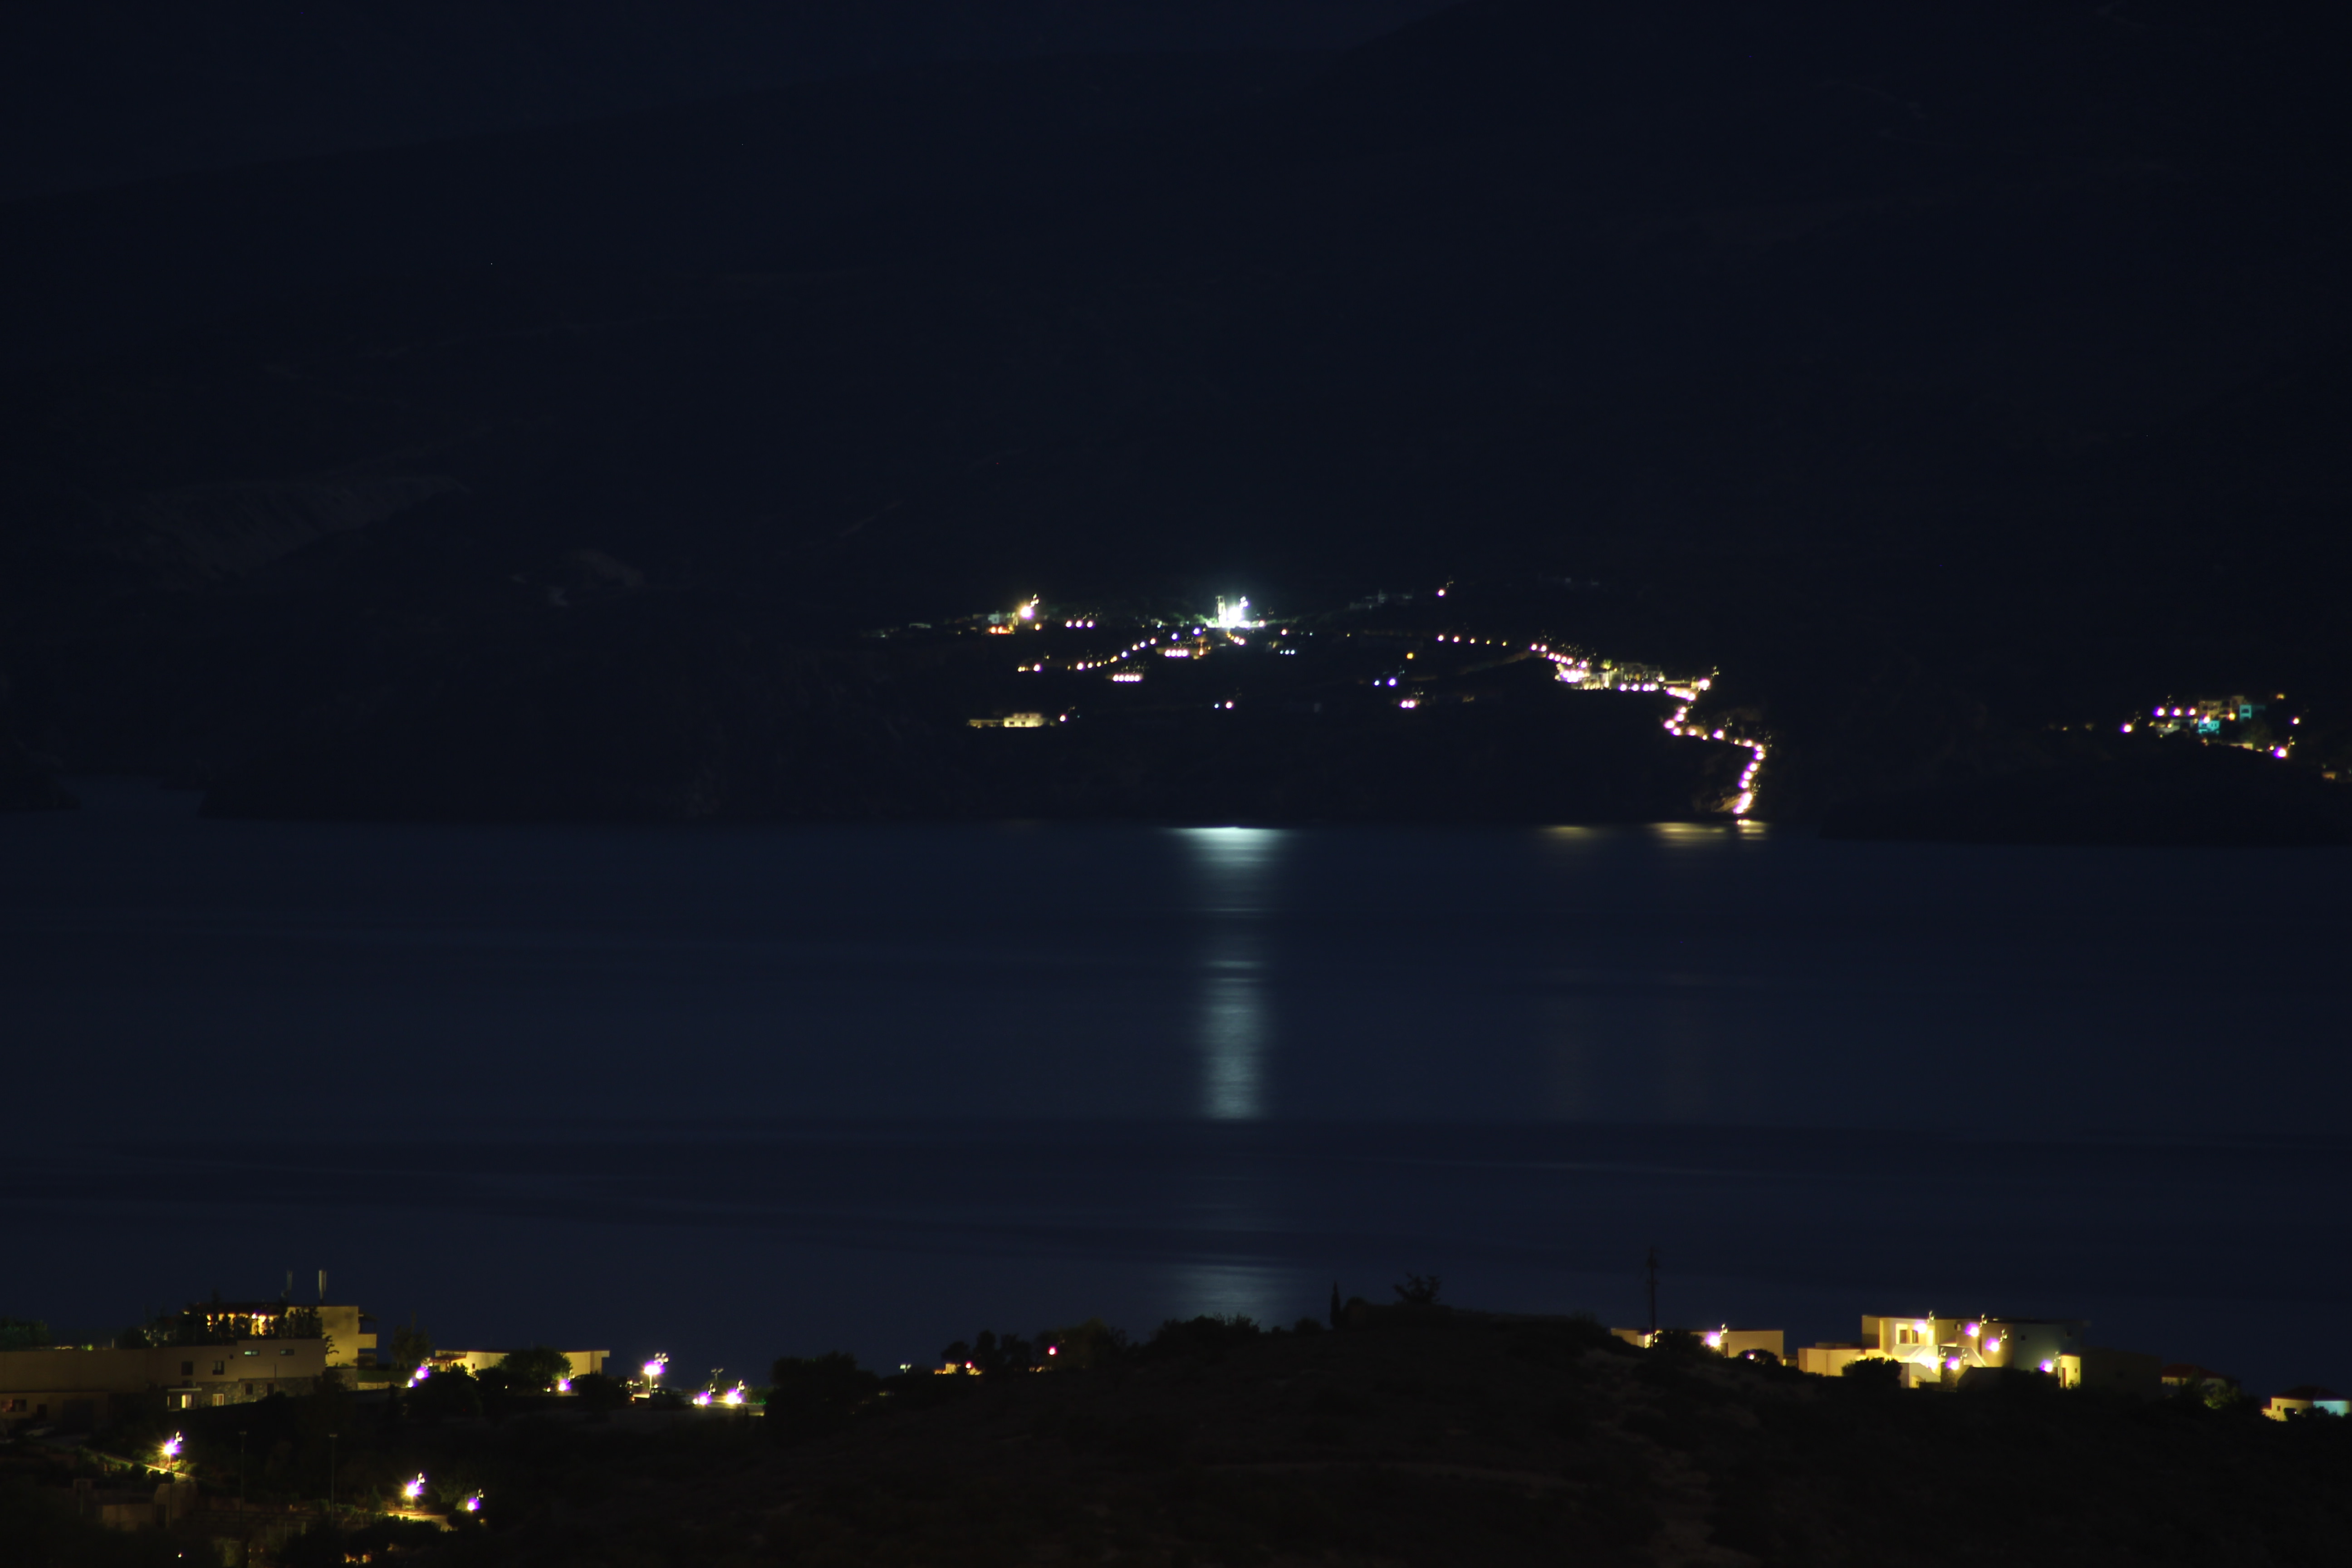 Καλό χωρίο Αγίου Νικολάου Κρήτης .Νυχτερινή λήψη 24/06/2013 2:20 πρωί .